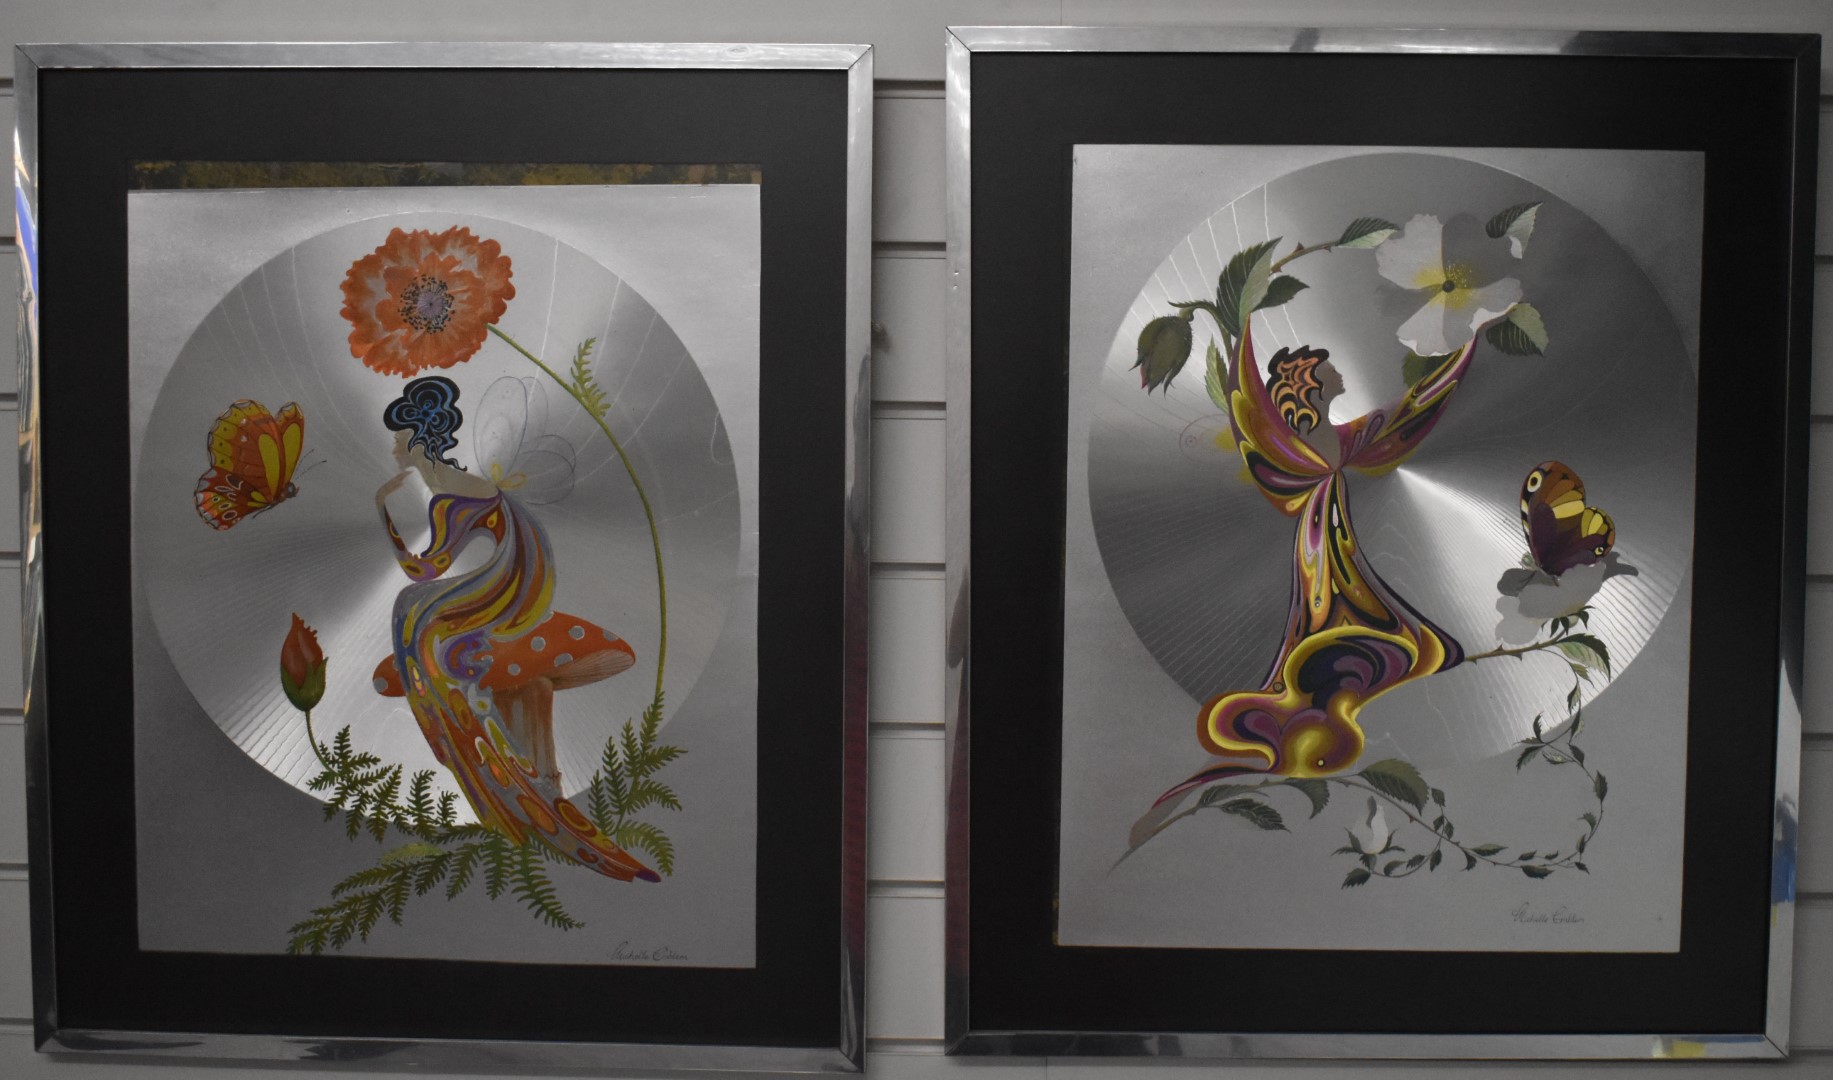 Pair of Michelle Emblem foil art pictures of fairies, 49 x 39cm